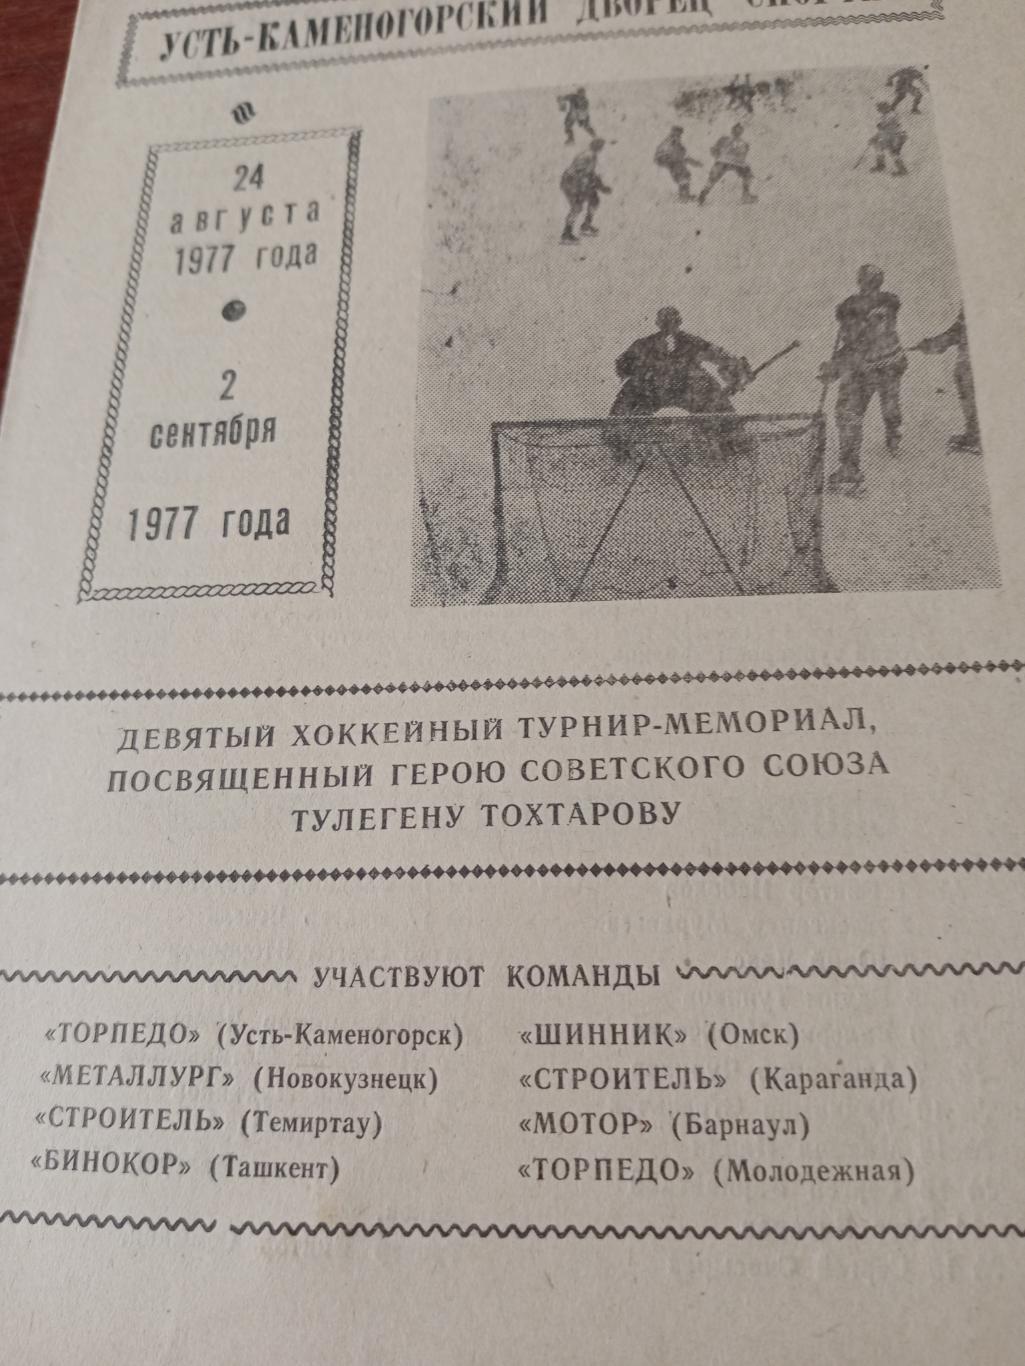 9 турнир памяти Т.Тохтарова. Усть-Каменогорск. 1977 год